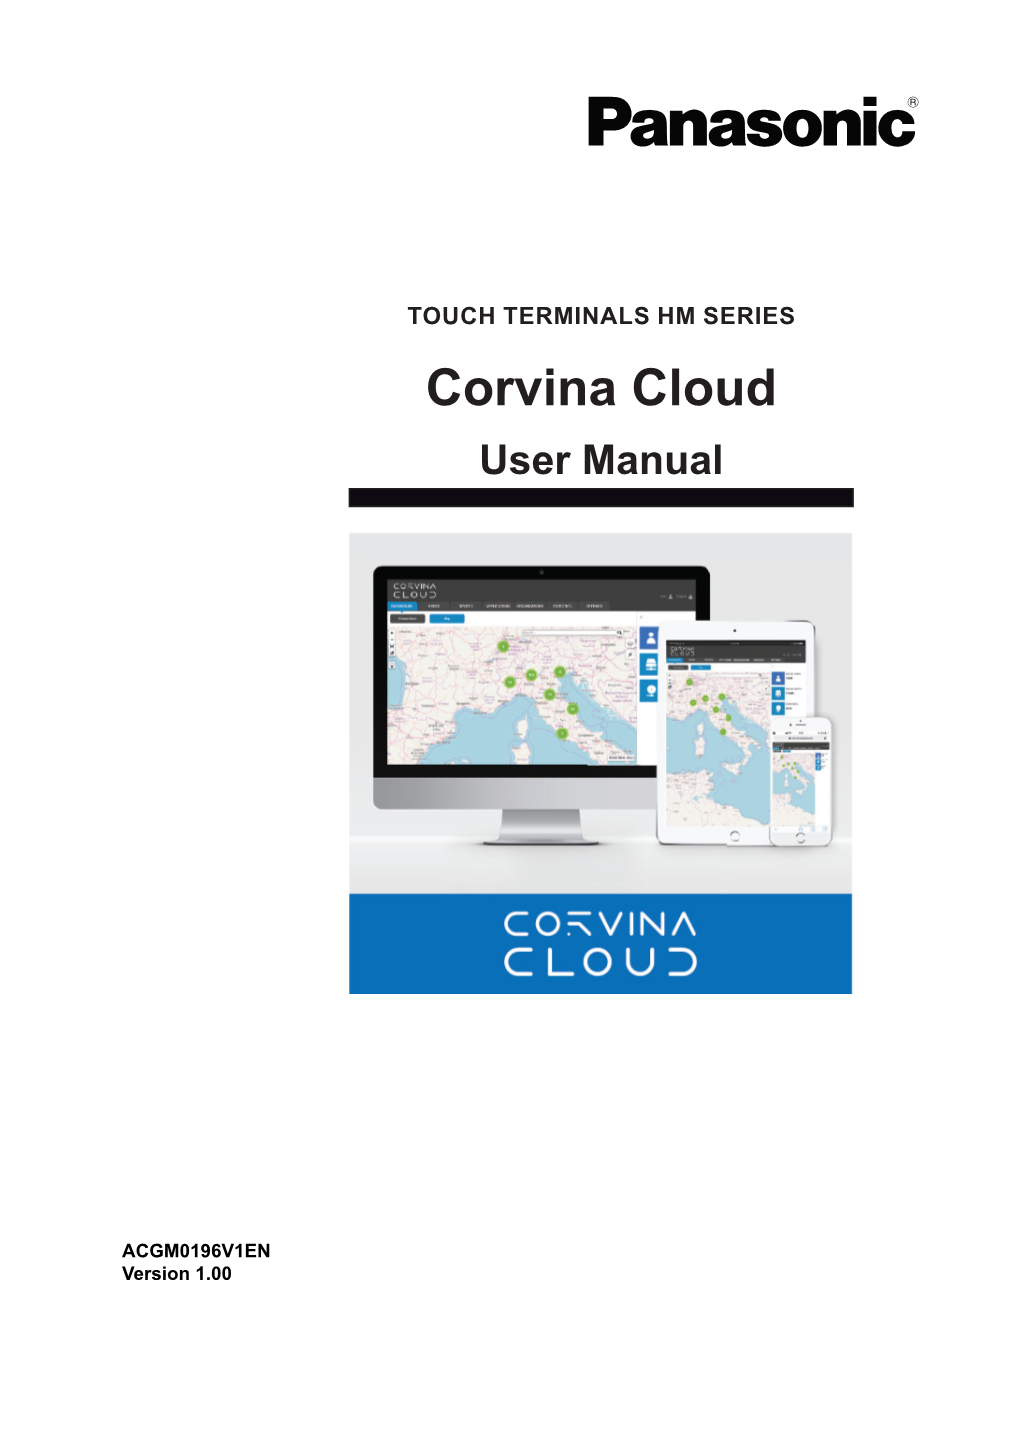 Corvina Cloud User Manual